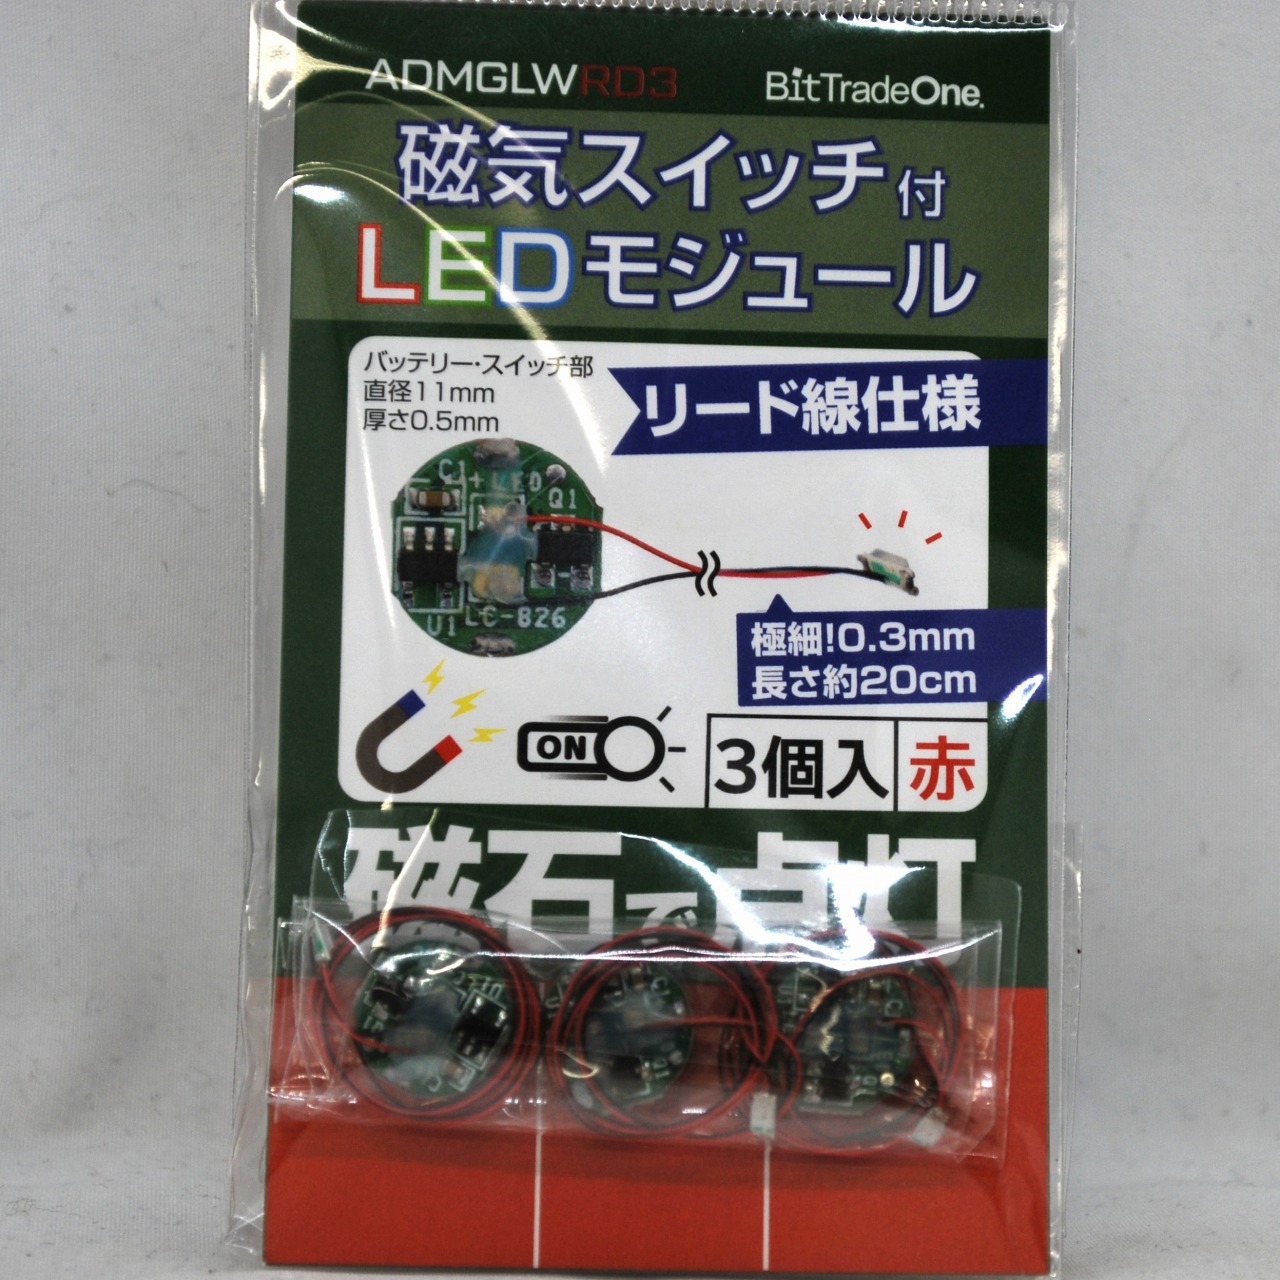 磁気スイッチ付きLEDモジュールリード線使用3セット:レッド